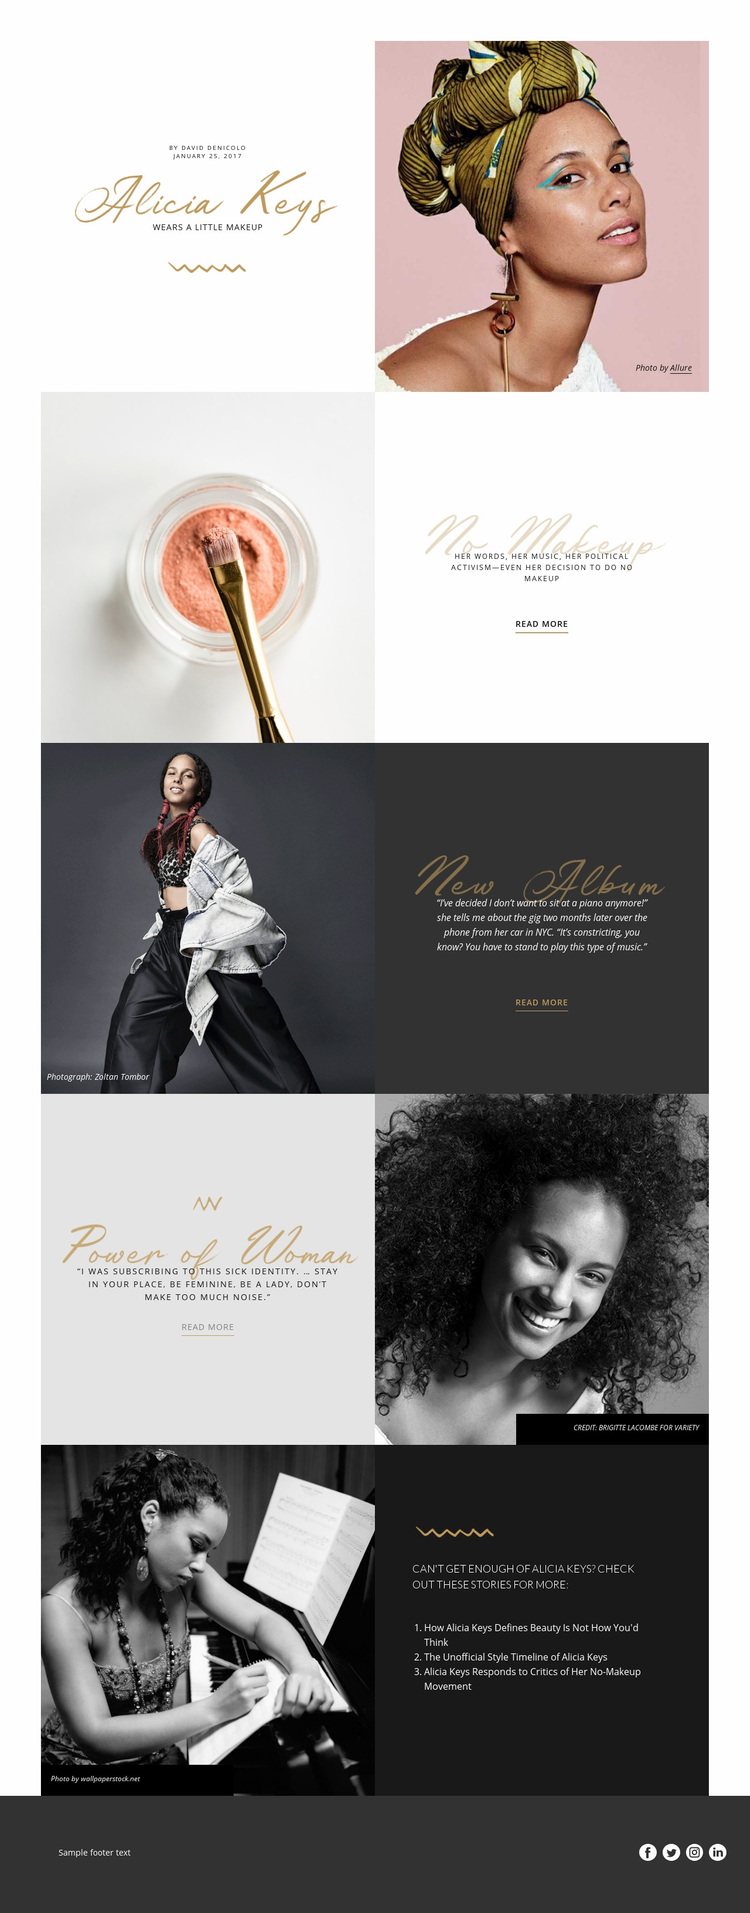 Alicia Keys Web Page Designer